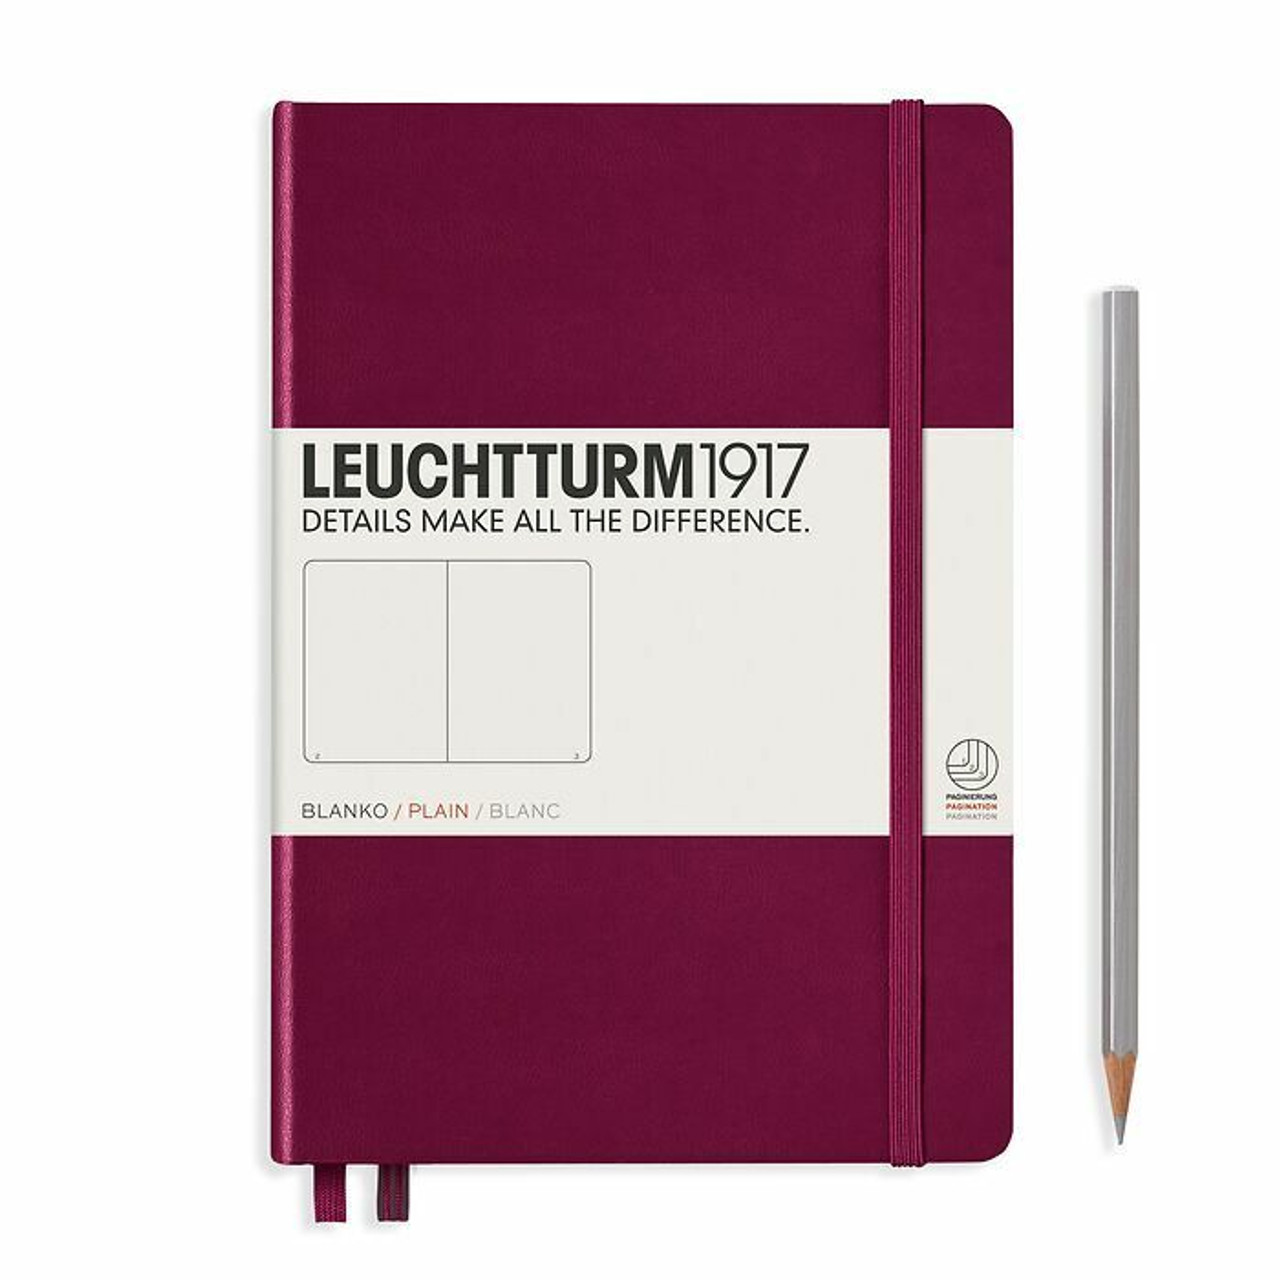 Leuchtturm1917 A5 Medium Hardcover Dotted Notebook - Fox Red